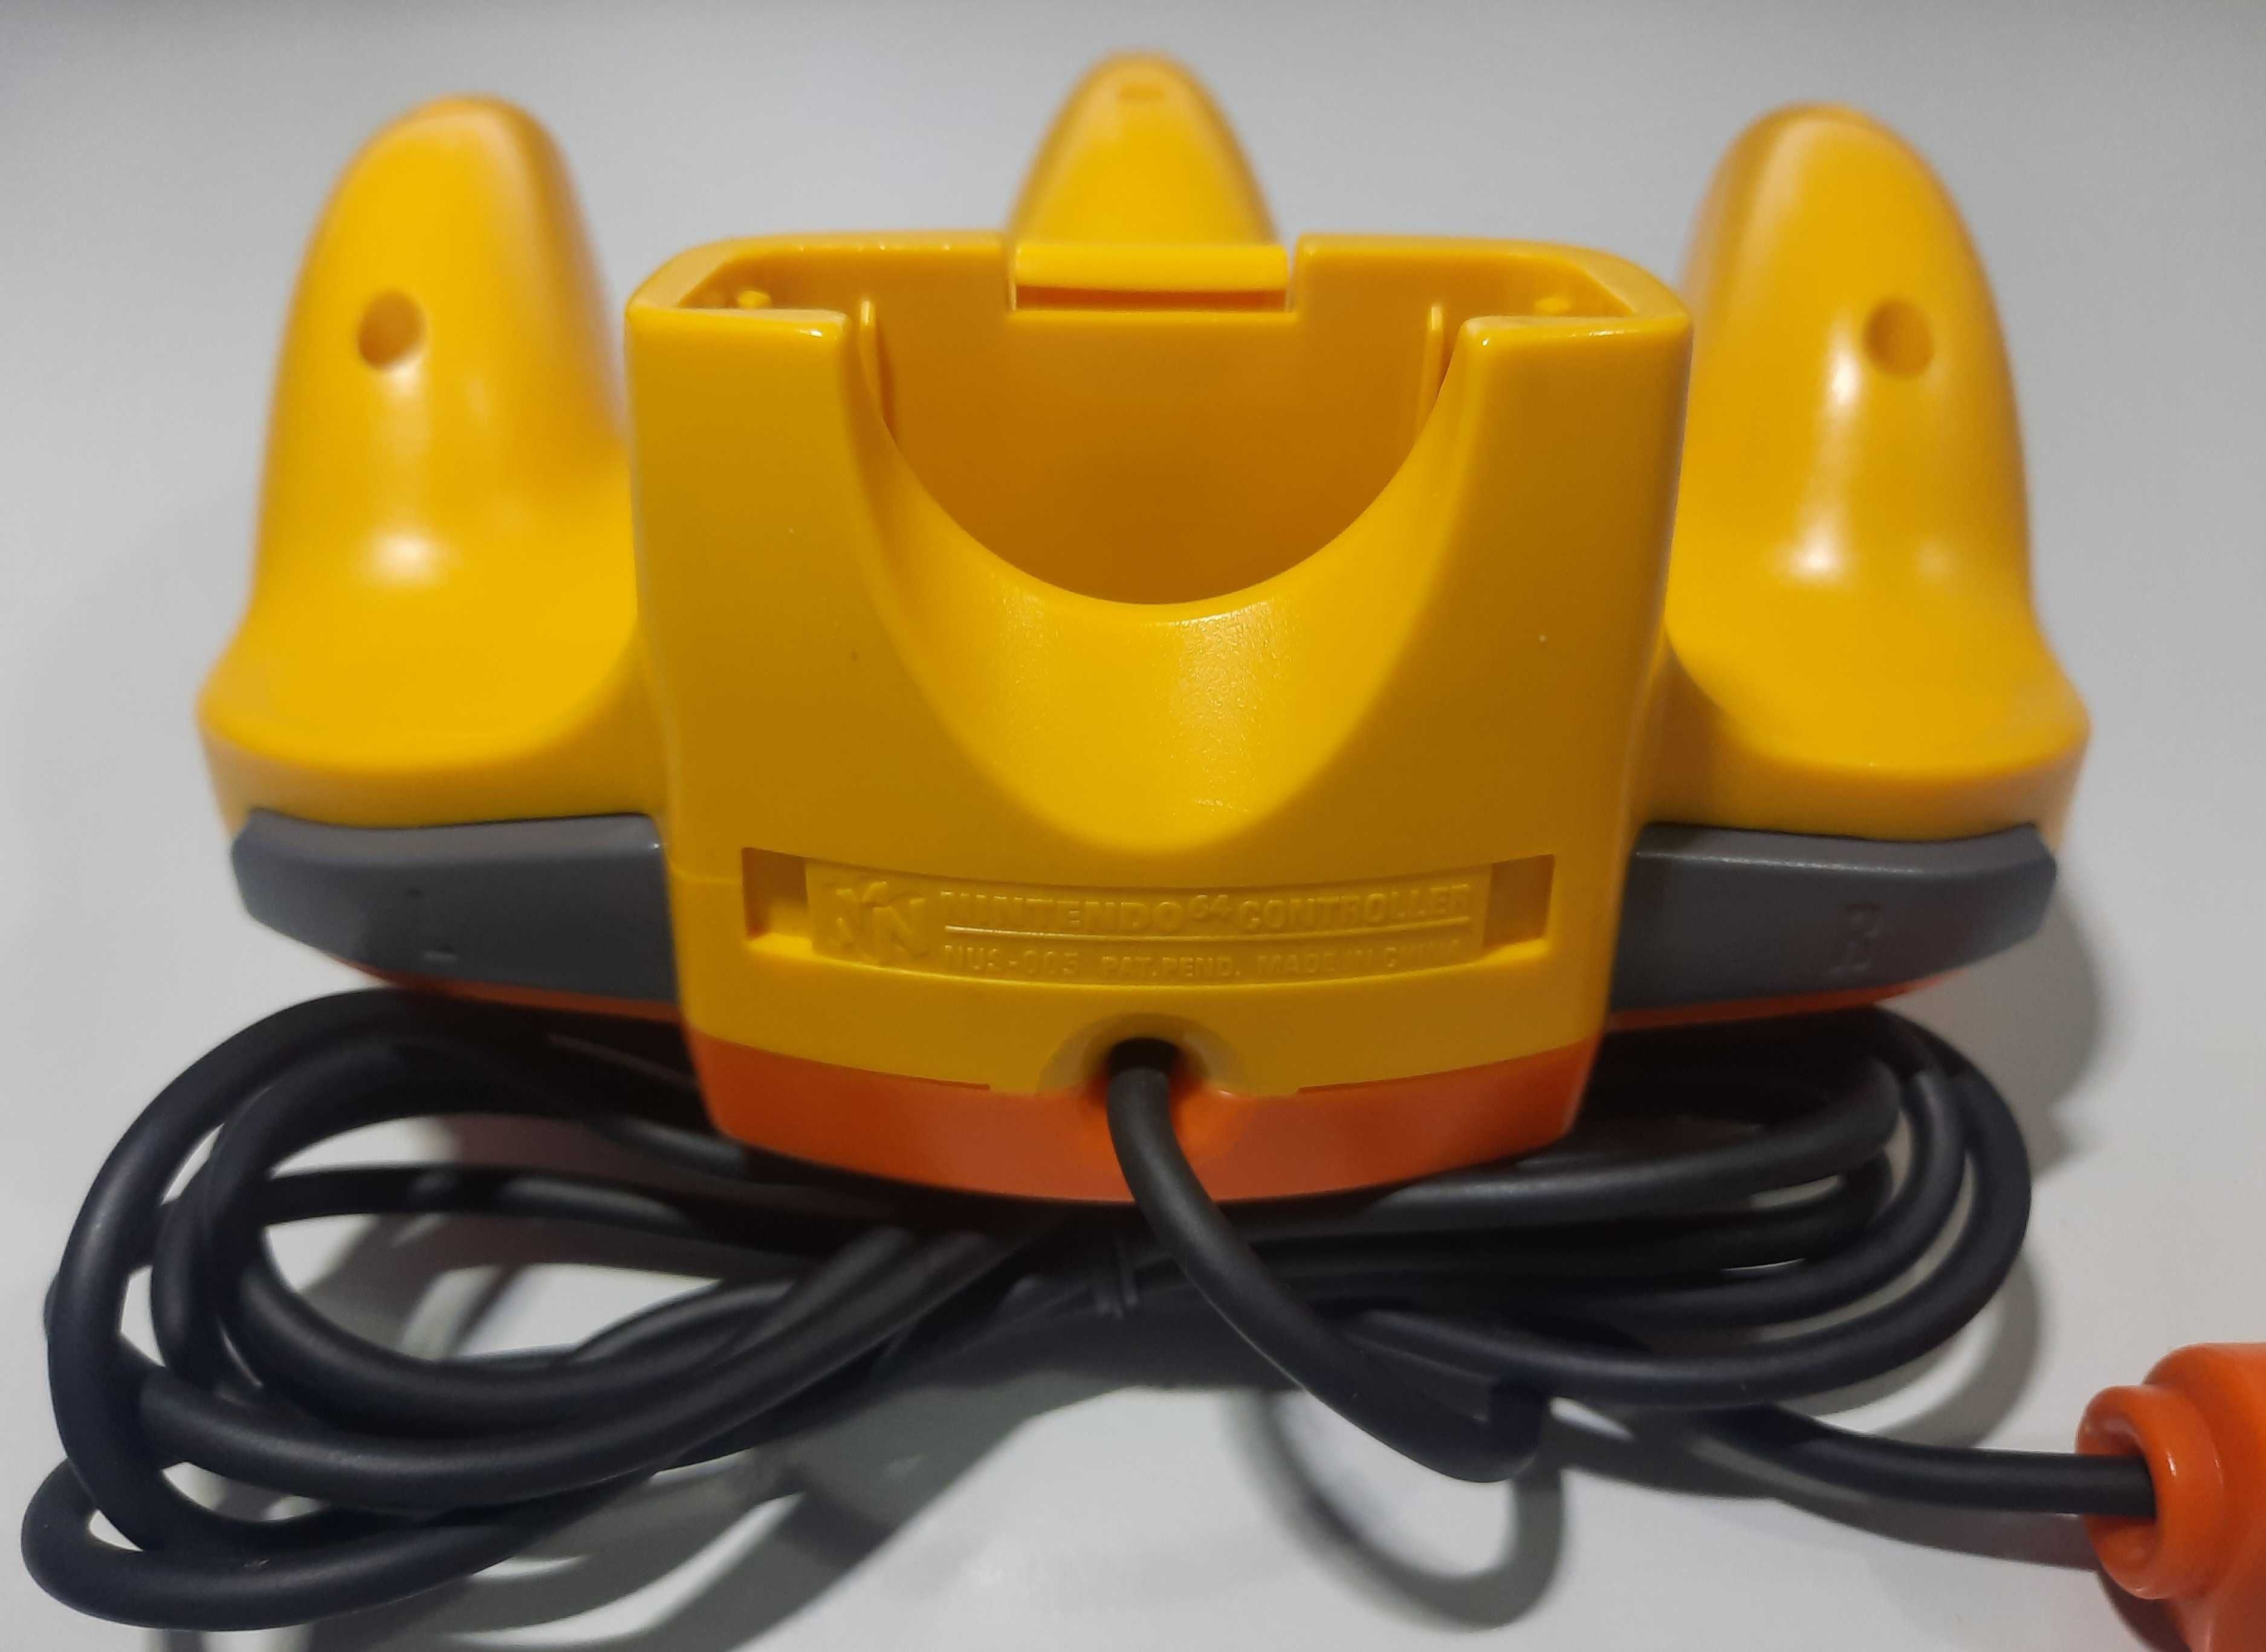 Pad Nintendo 64 / Pikachu Orange and Yellow (NUS-005)